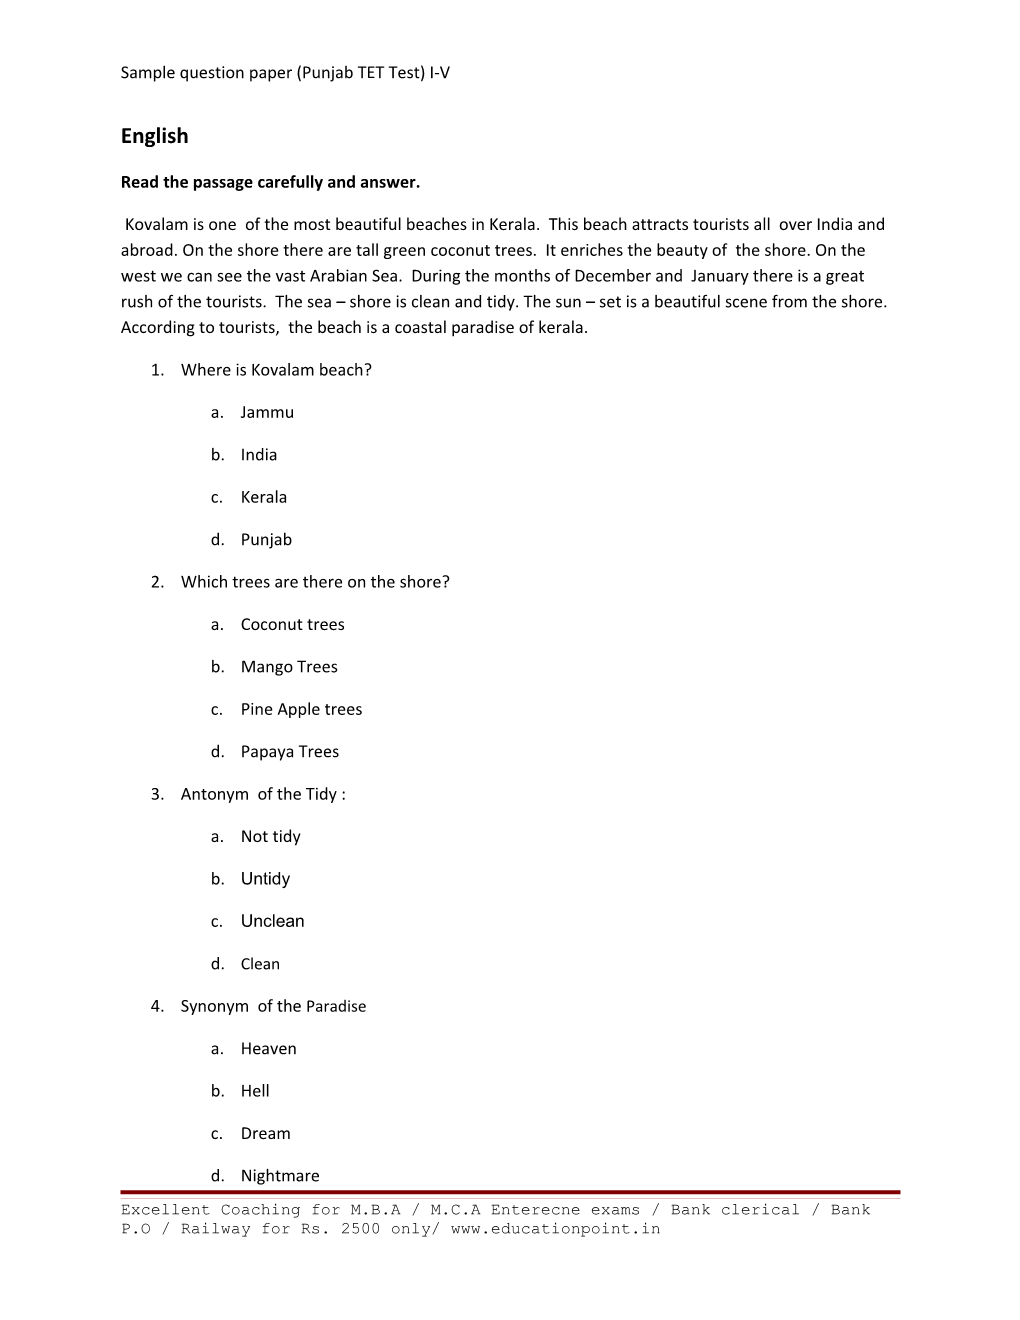 Sample Question Paper (Punjab TET Test) I-V